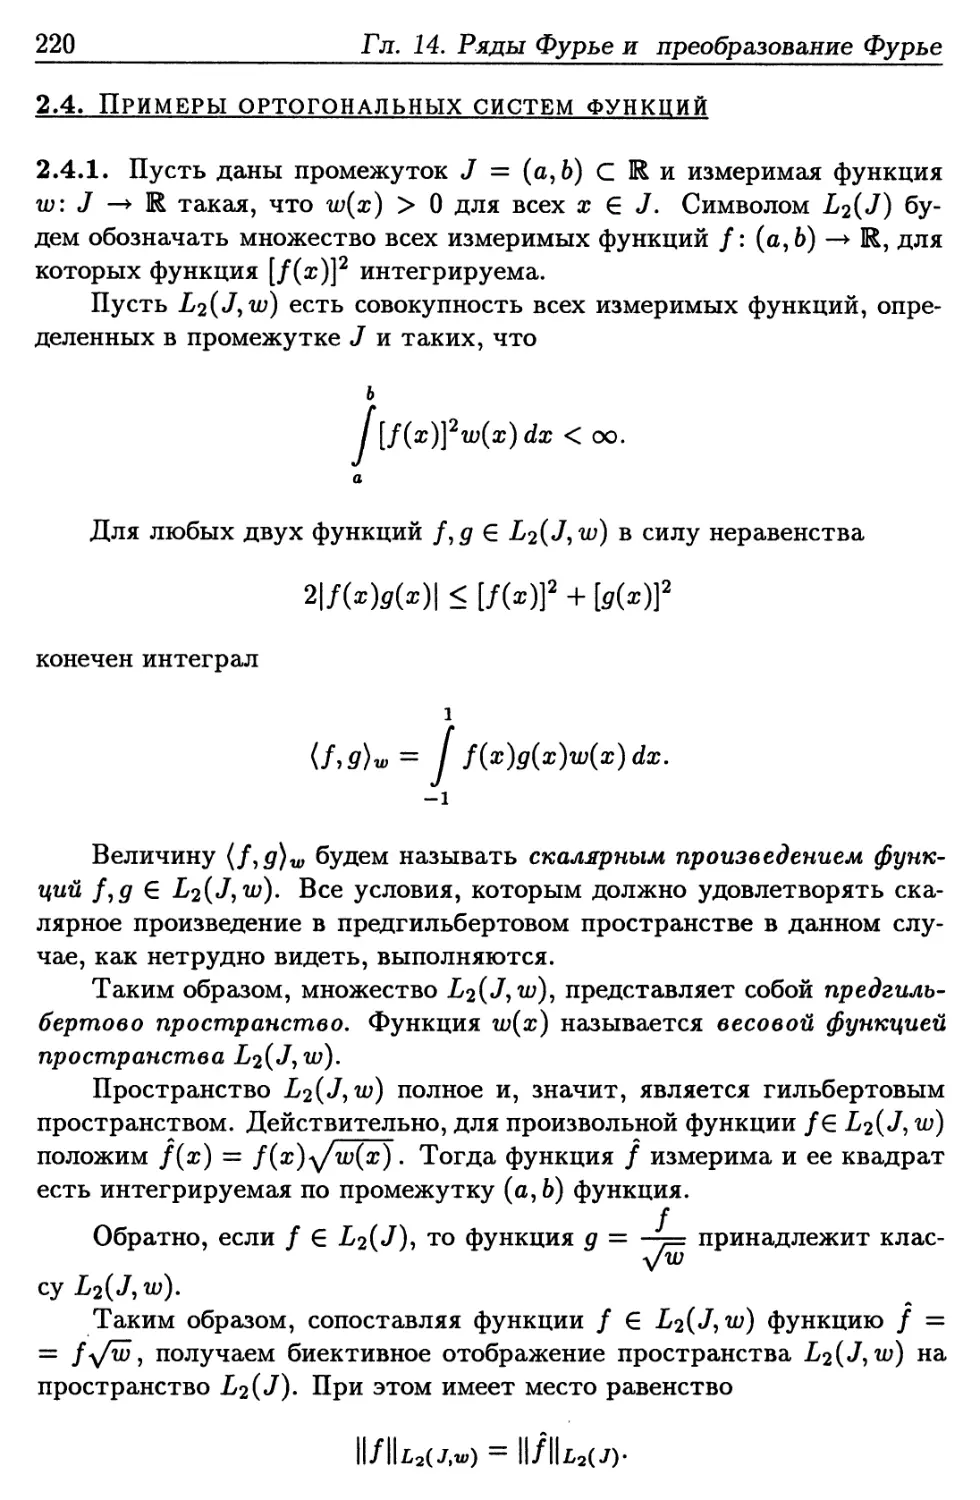 2.4. Примеры ортогональных систем функций